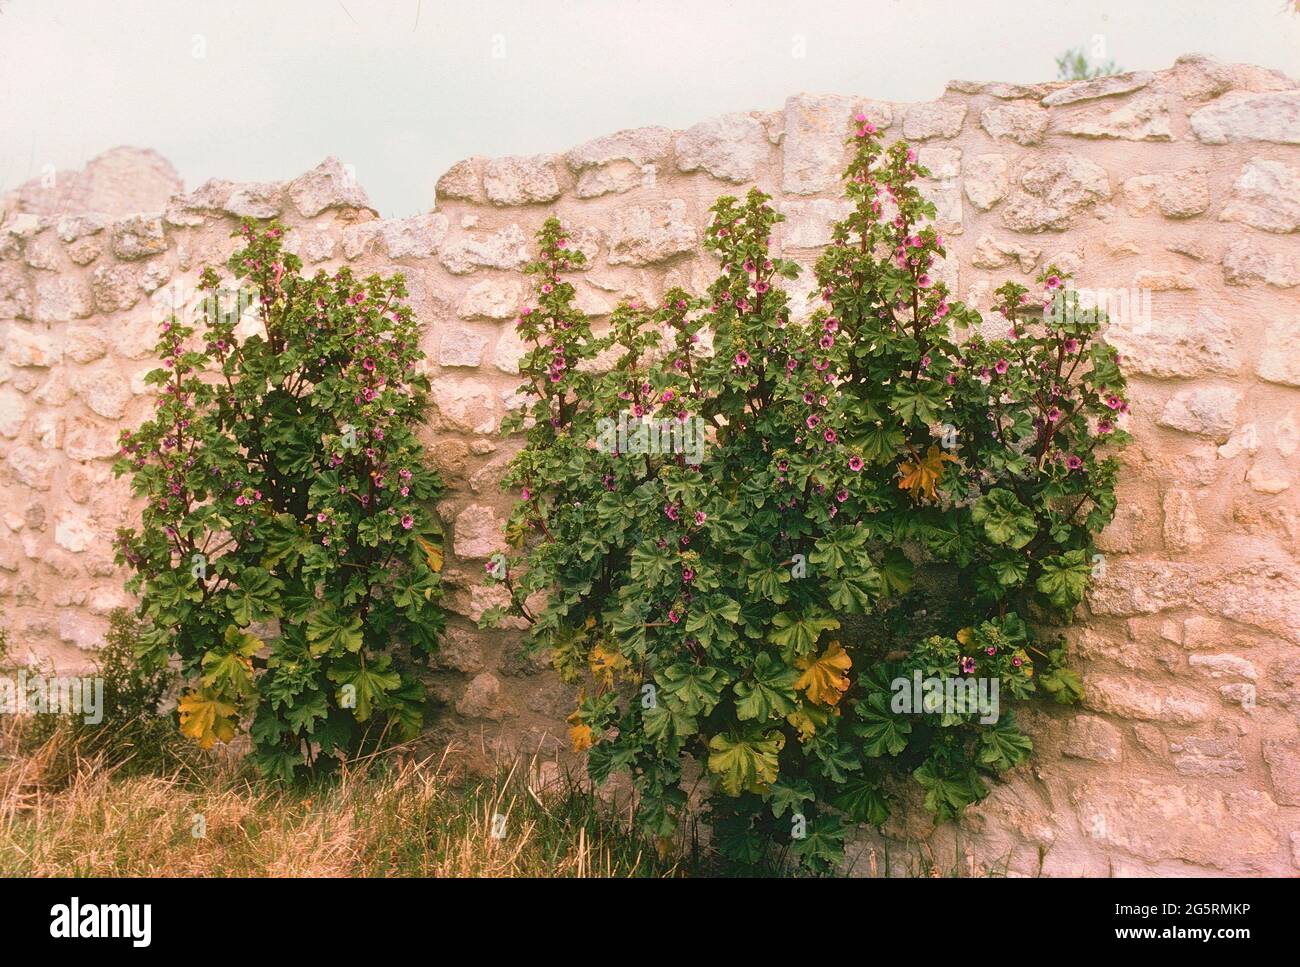 Baumförmige Strauchppel, Lavatera arborea, Malvaceae, blühend, Sträucher, Pflanze, Steinmauer, Provence, Frankreich Banque D'Images